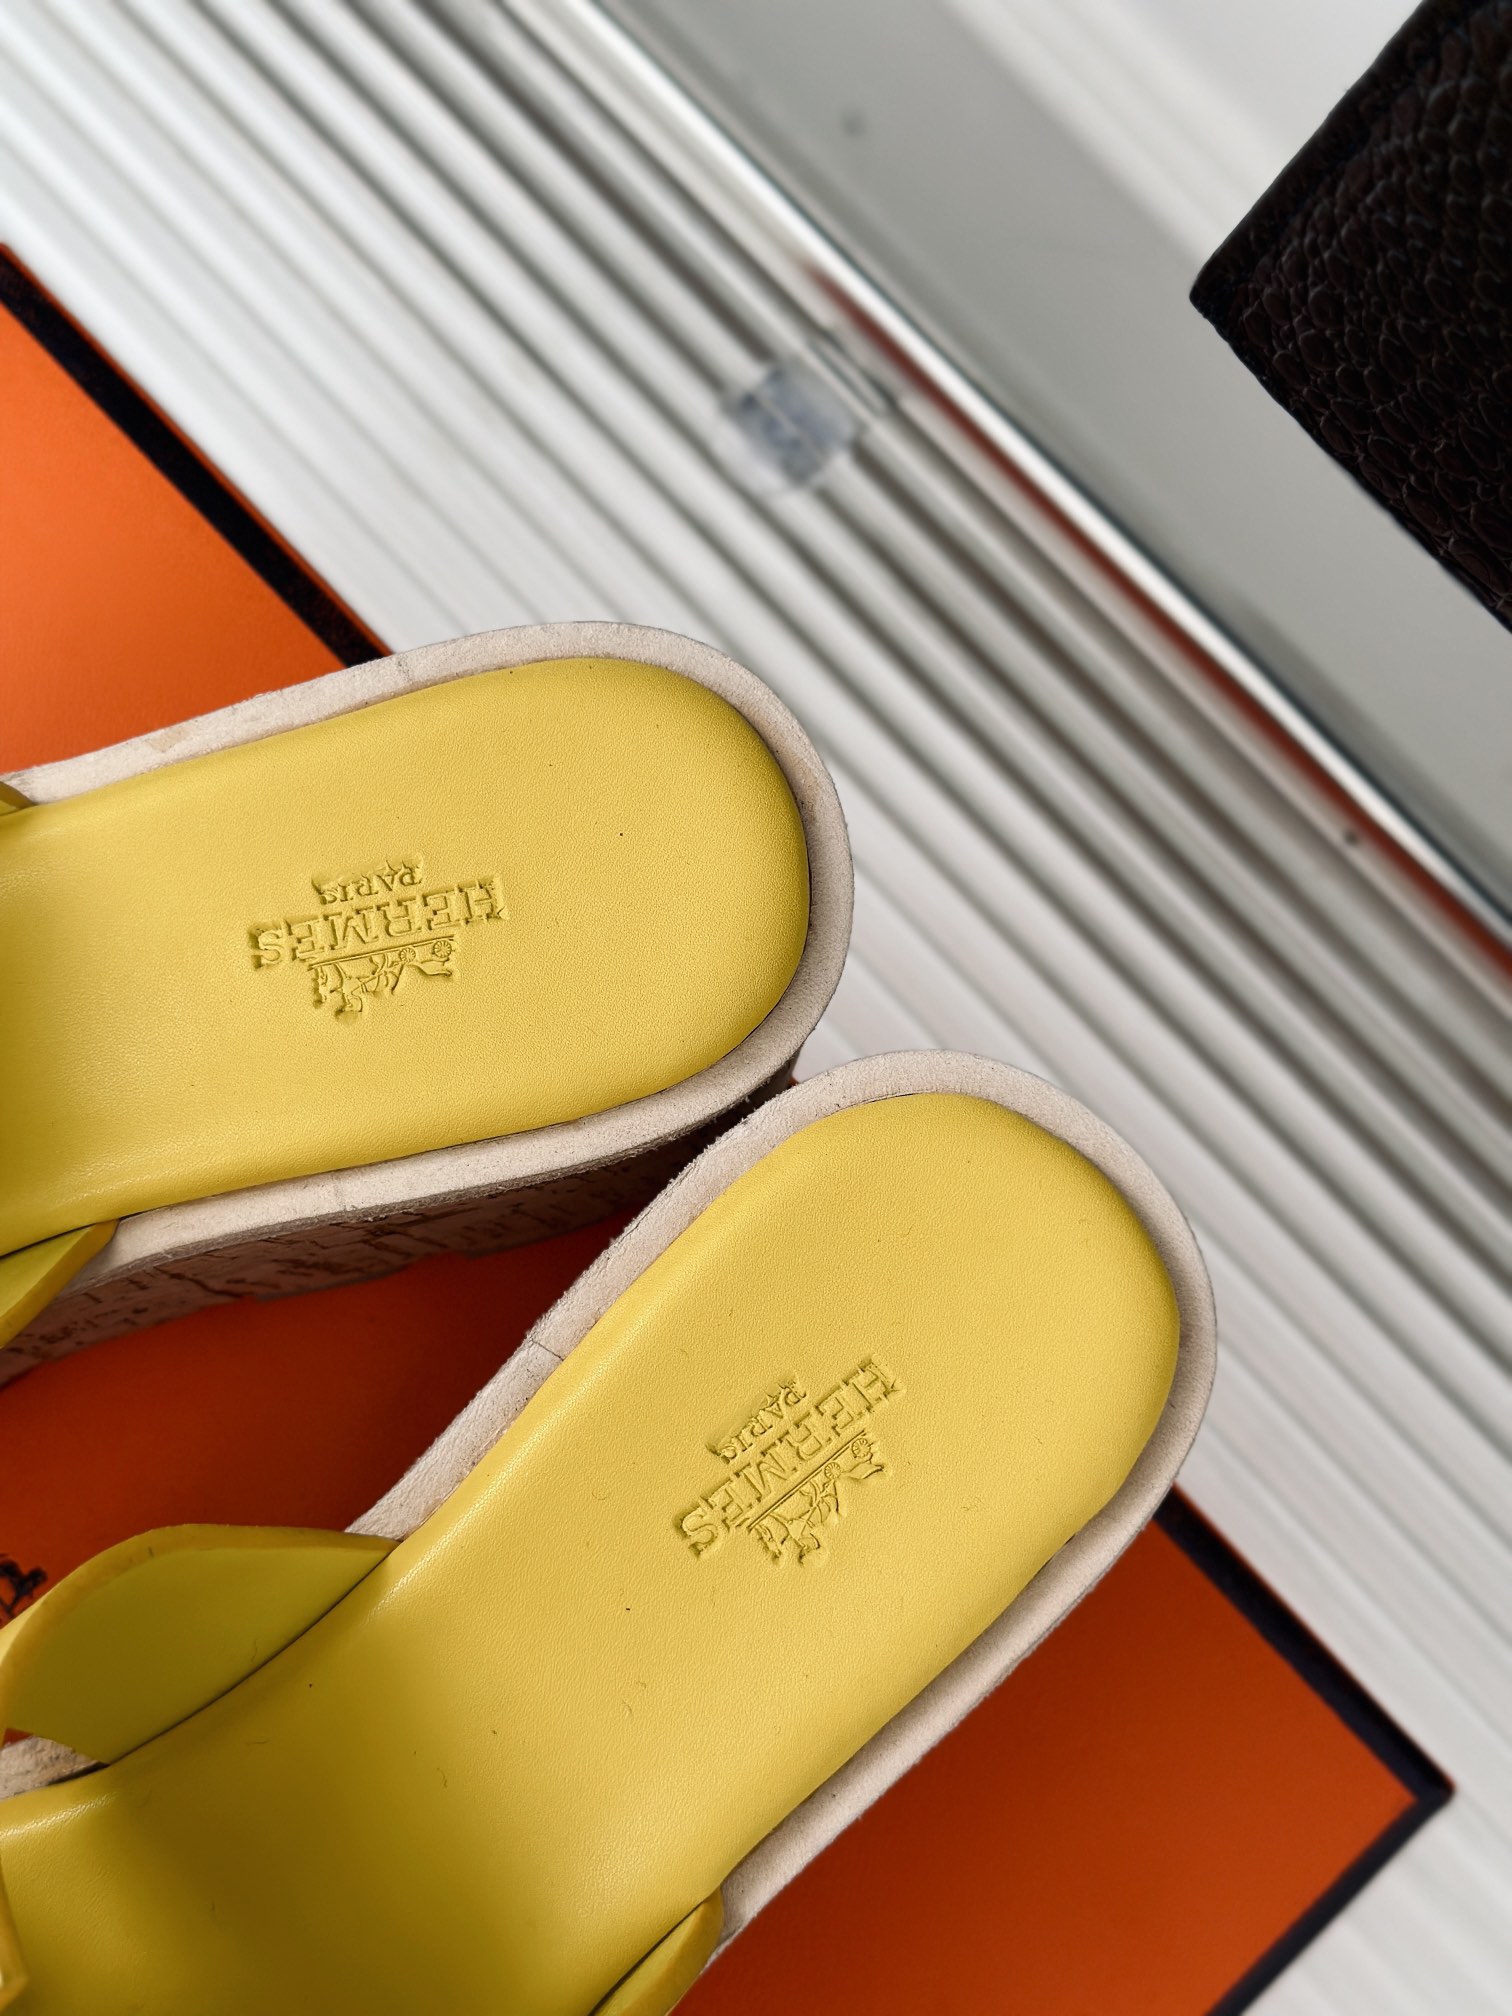 Hermès/爱马仕经典H厚底拖鞋依旧是永恒经典的H造型极约复古的设计浓厚的异域风情厚底在拉长腿方面真的